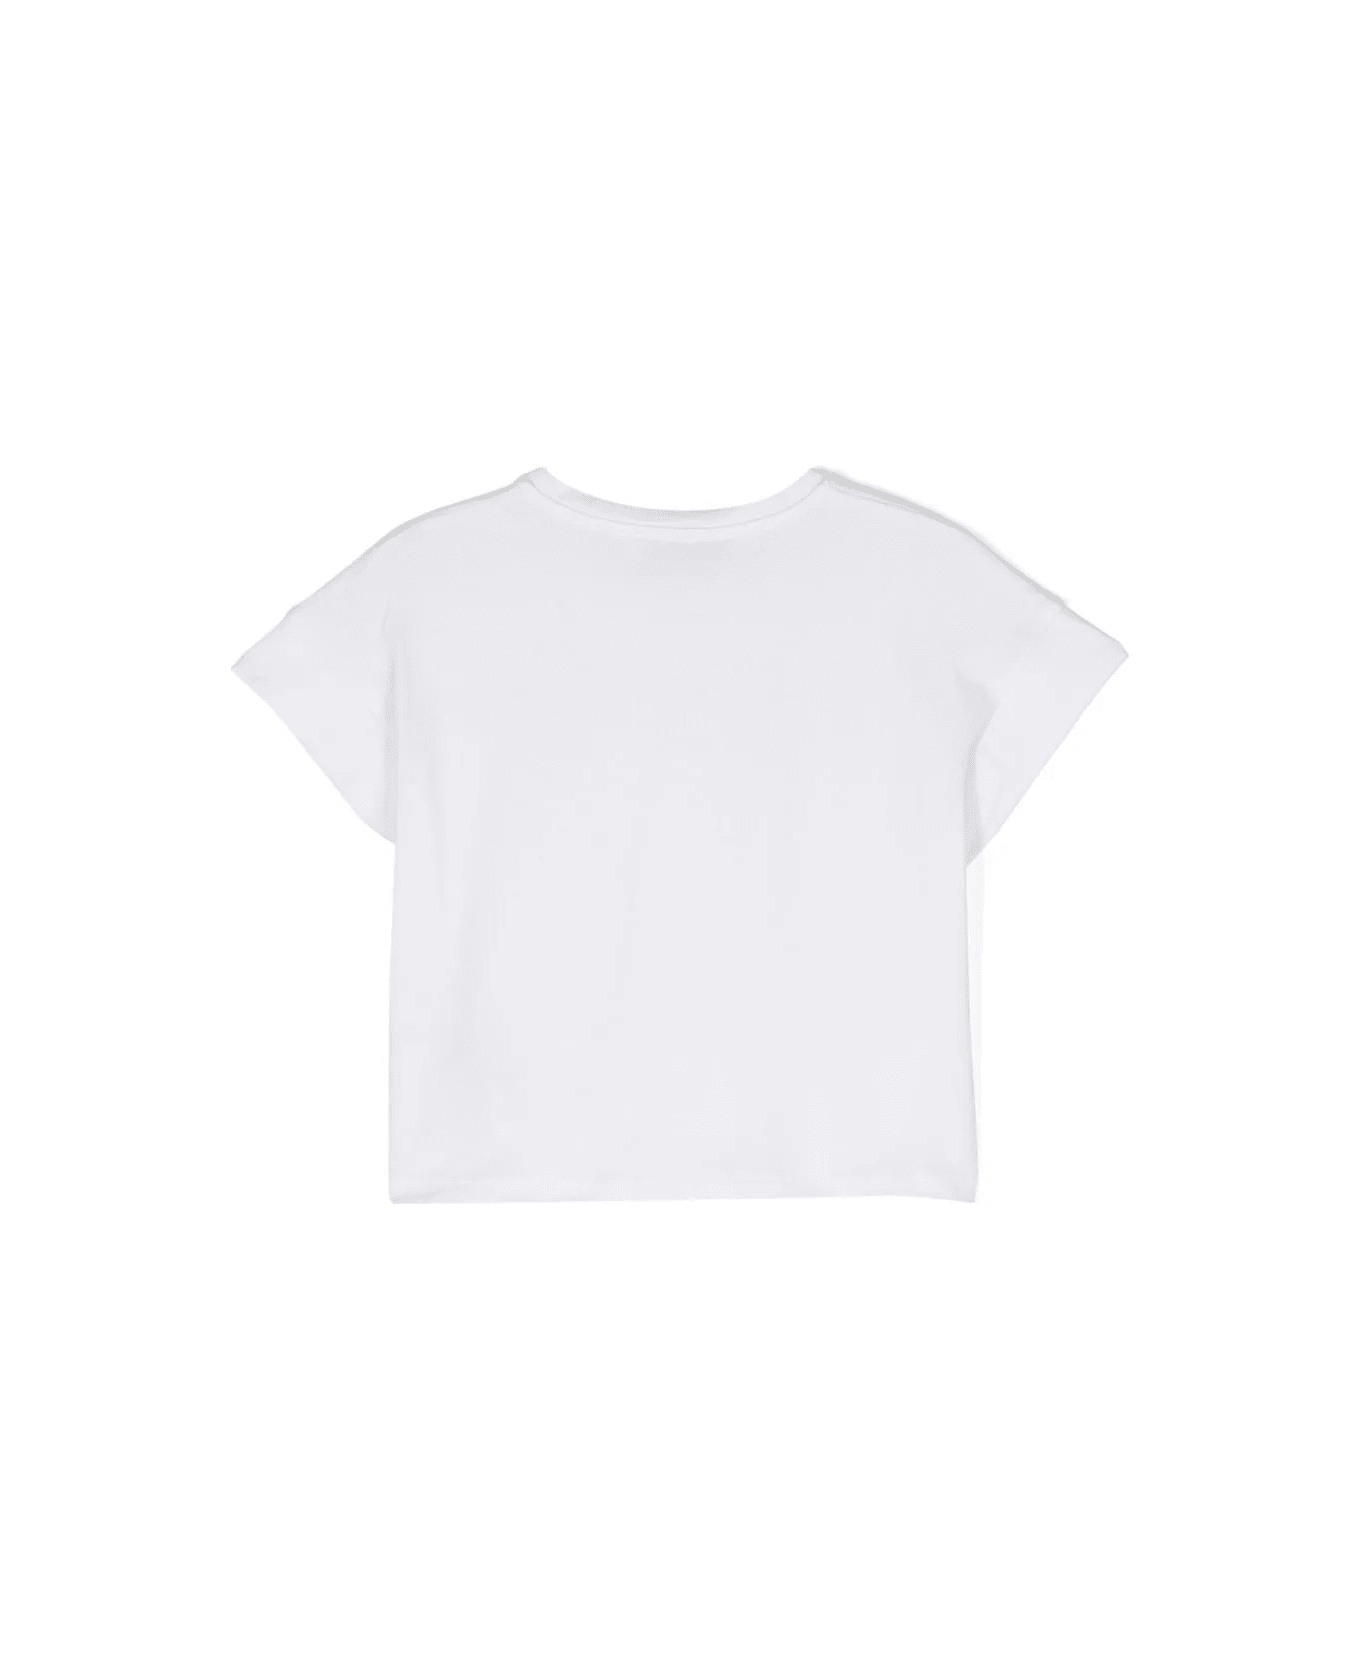 Miss Blumarine White T-shirt With Logo Print With Rhinestones - Bianco